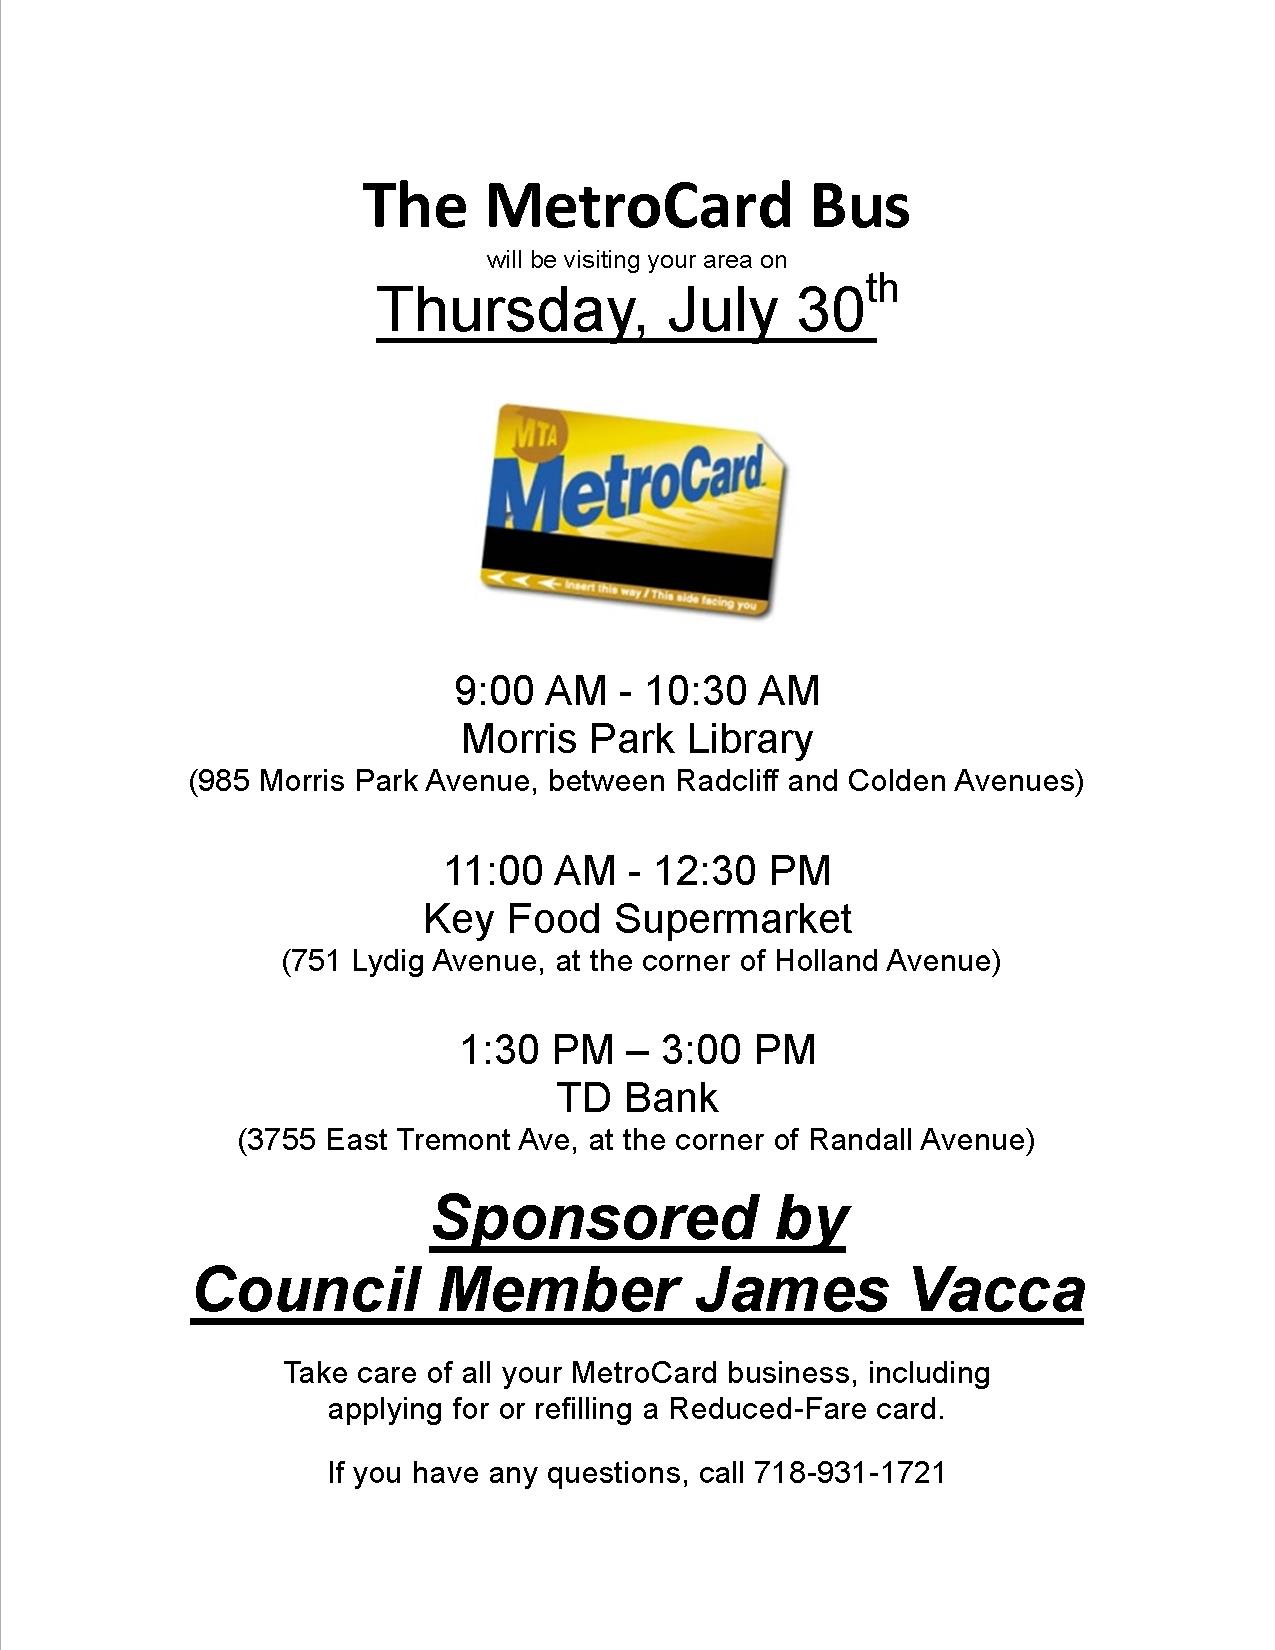 MetroCard Bus JPEG